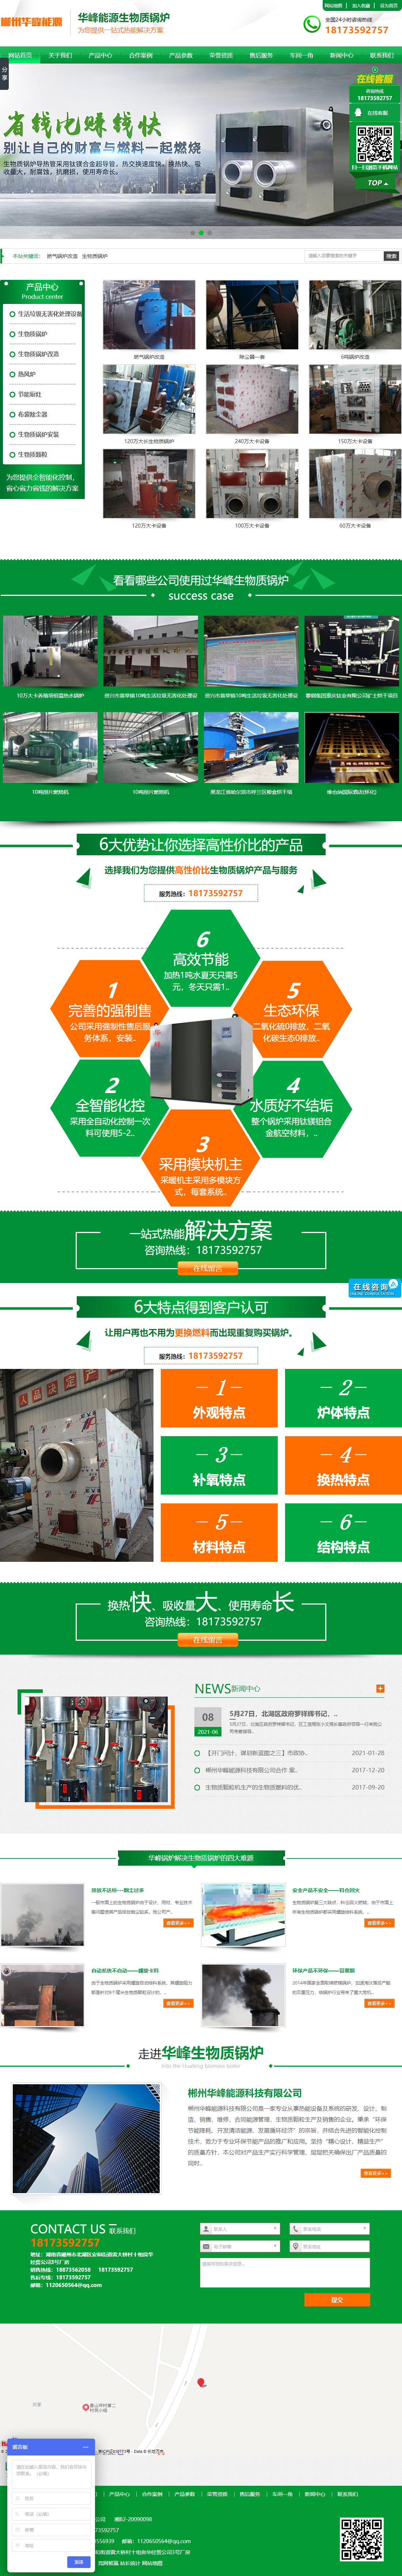 郴州华峰能源科技有限公司网站案例